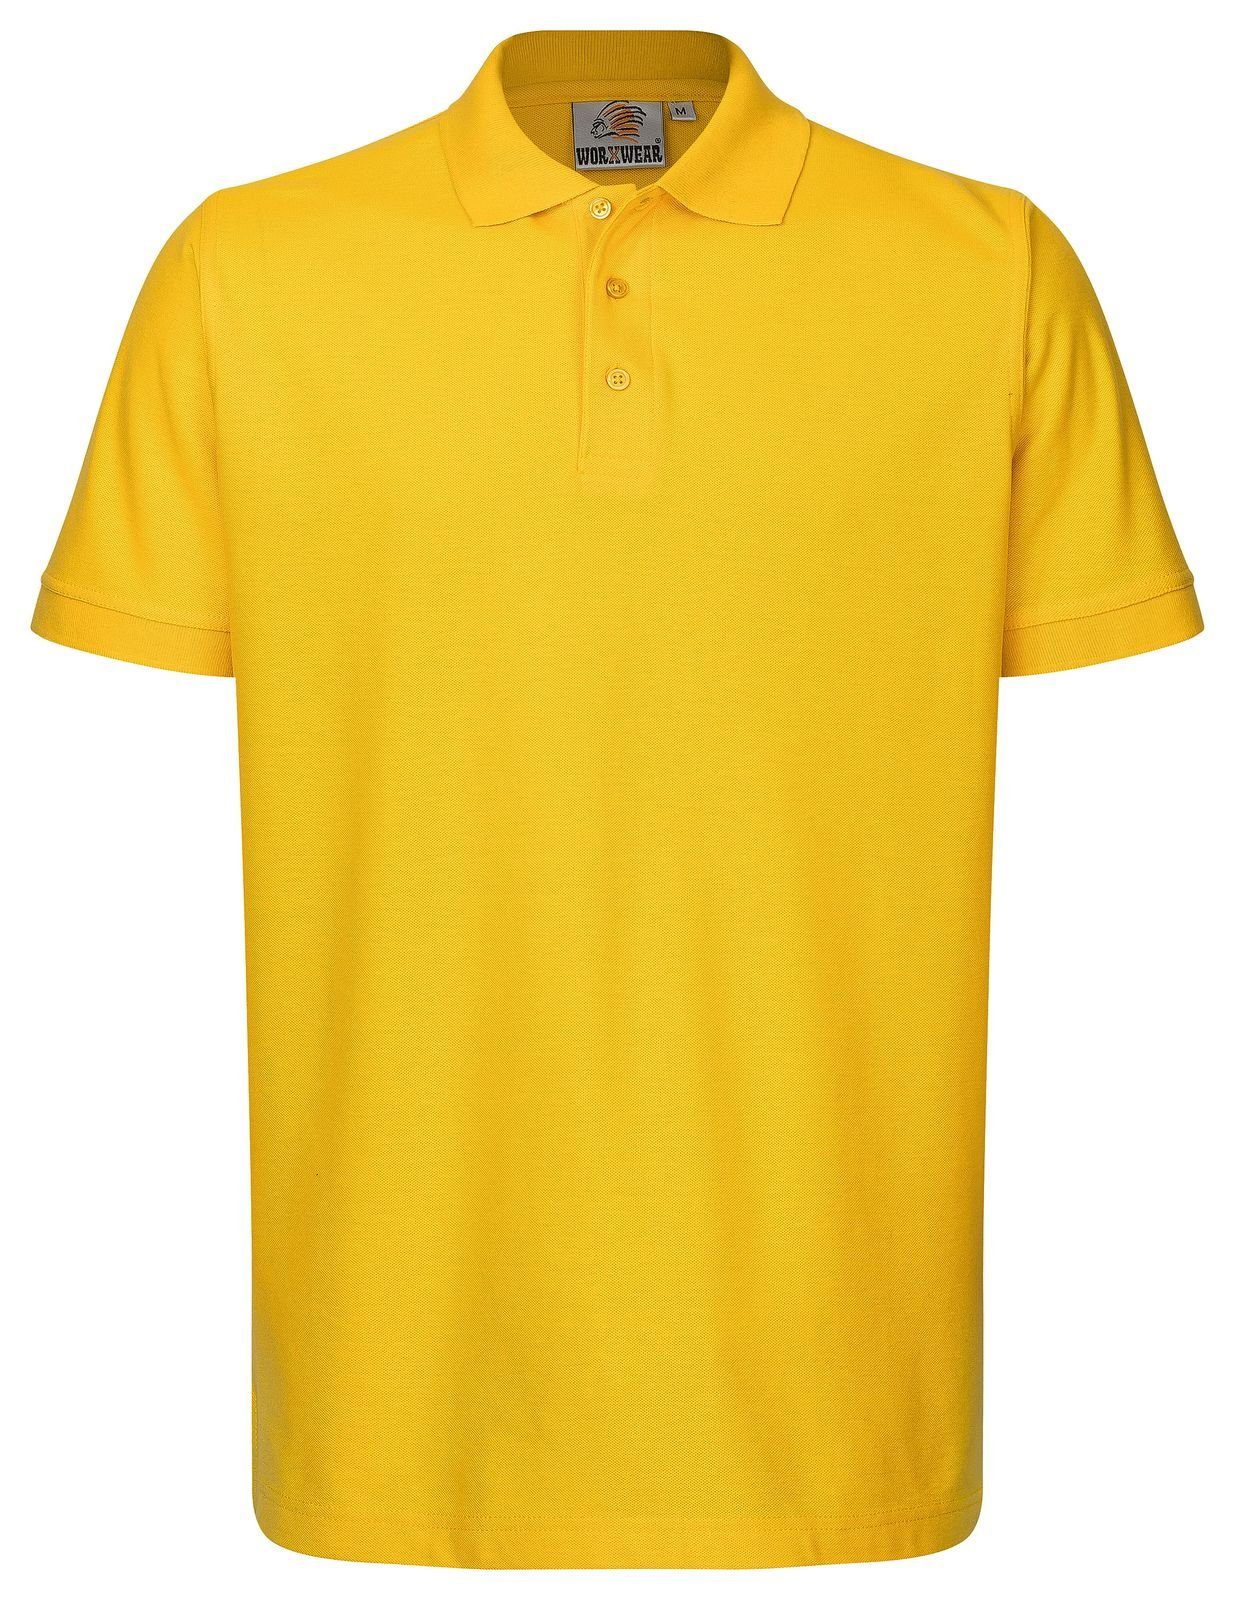 WORXWEAR Poloshirt mit strapazierfähiges < 5% Gelb, Einlaufwert Rot Poloshirt 3er-Pack) (Spar-Set, Herren Rosa